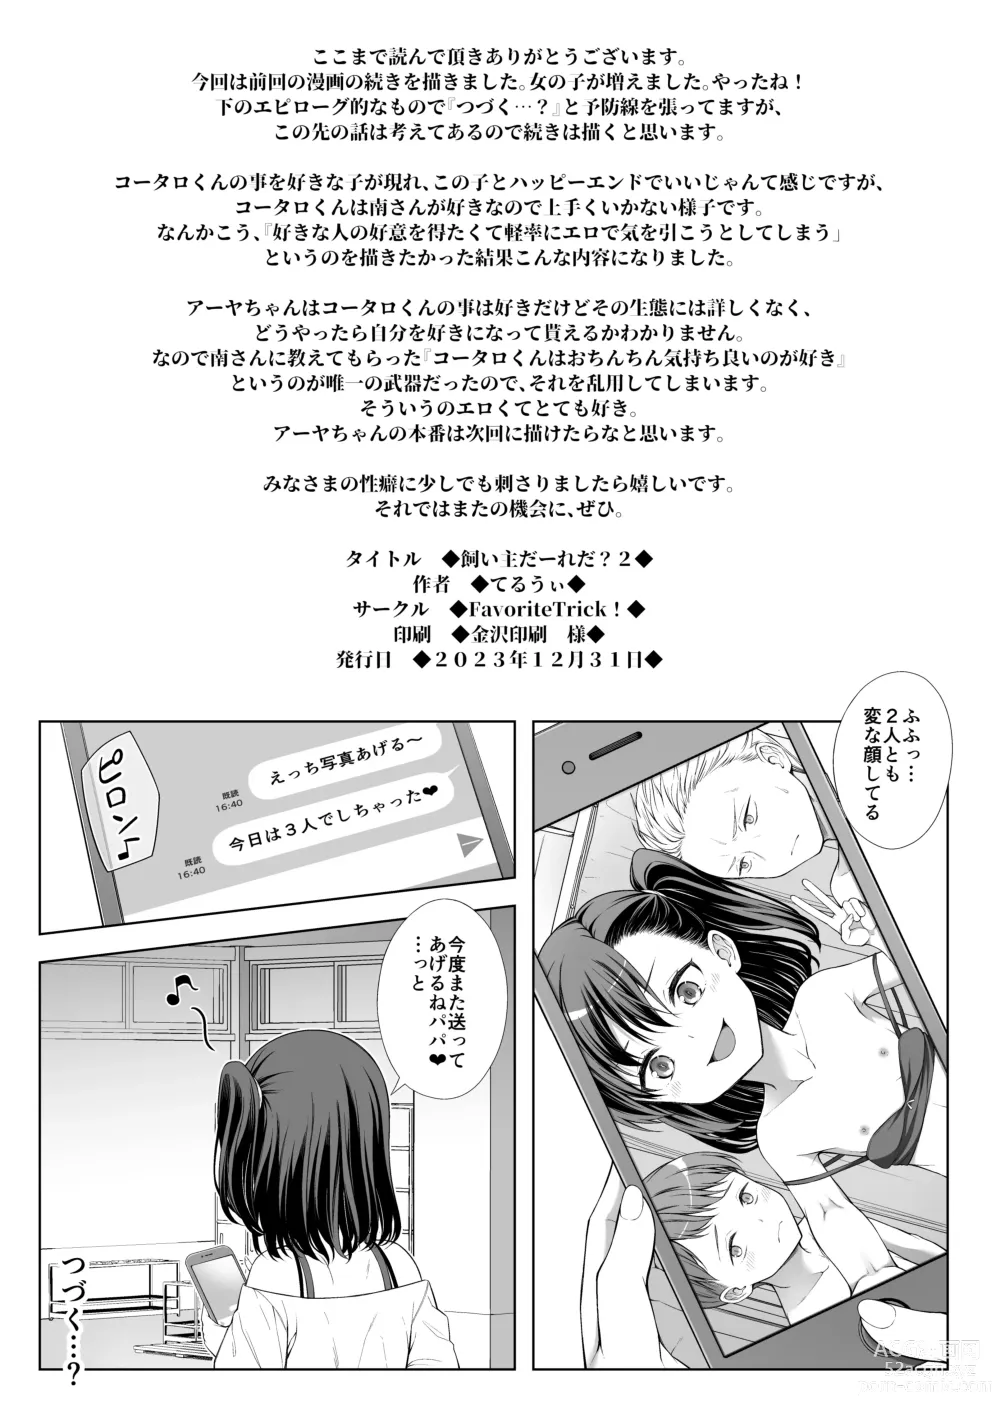 Page 24 of doujinshi Kainushi Daare da? 2